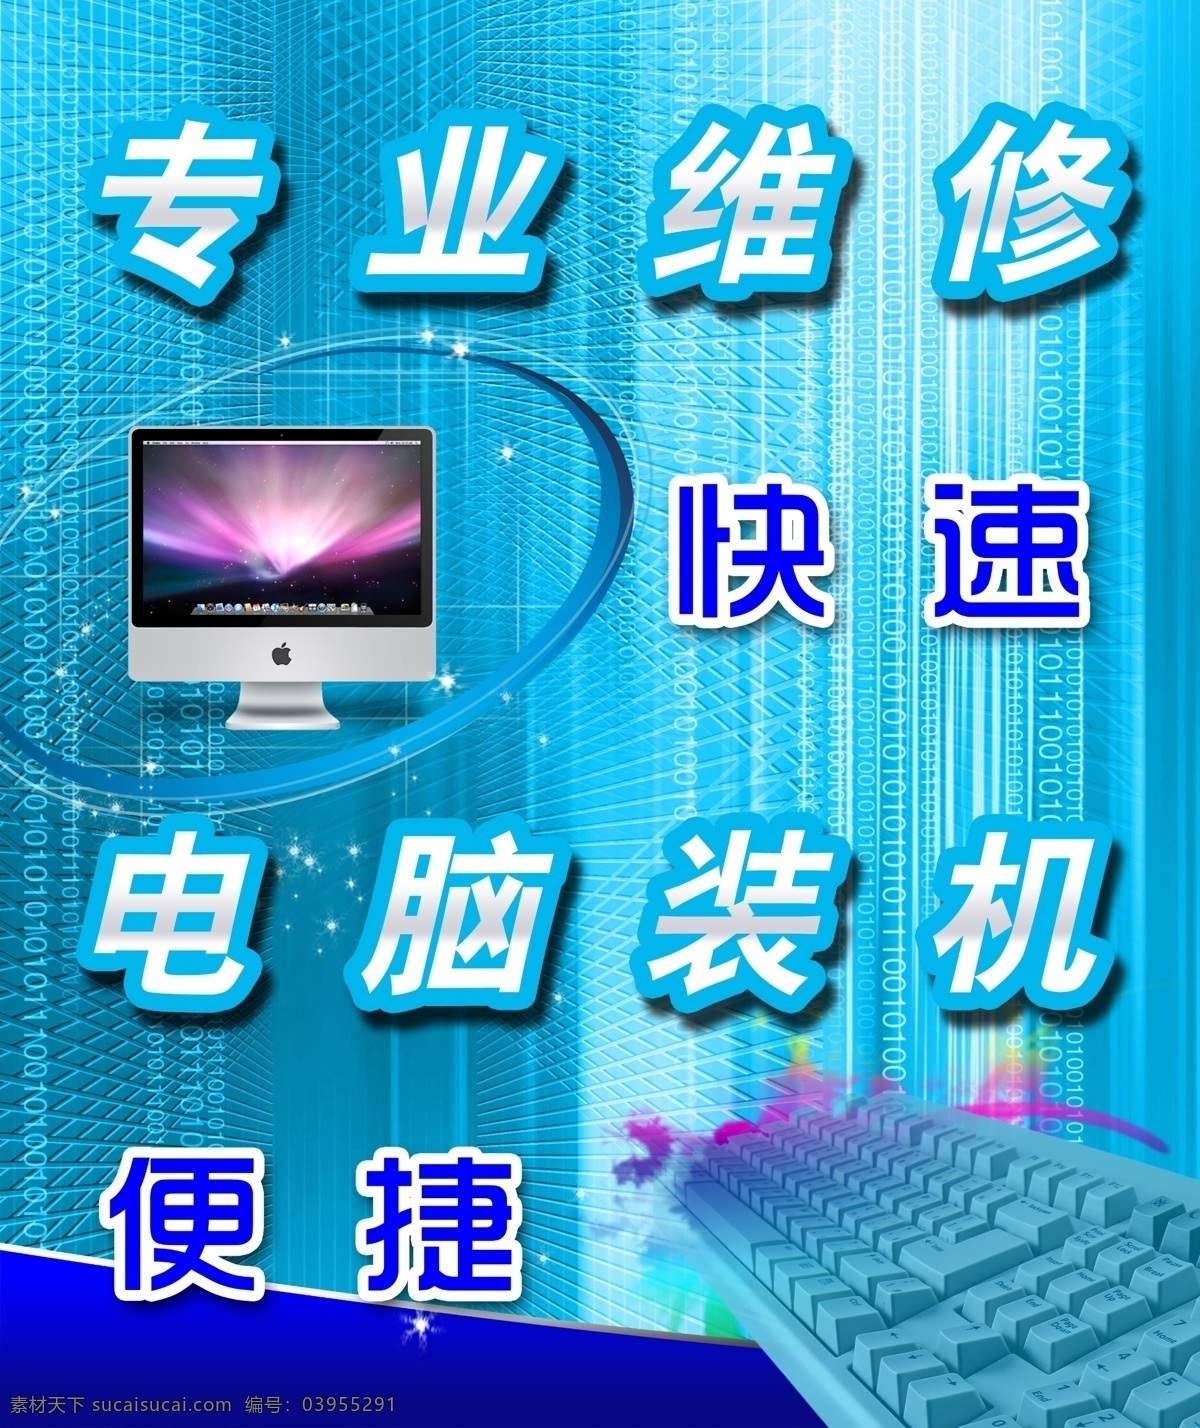 电脑 专业维修 海报 快速 电脑装机 便捷 电脑维修 商务 键盘 苹果电脑 动感 蓝色 国内广告设计 广告设计模板 源文件